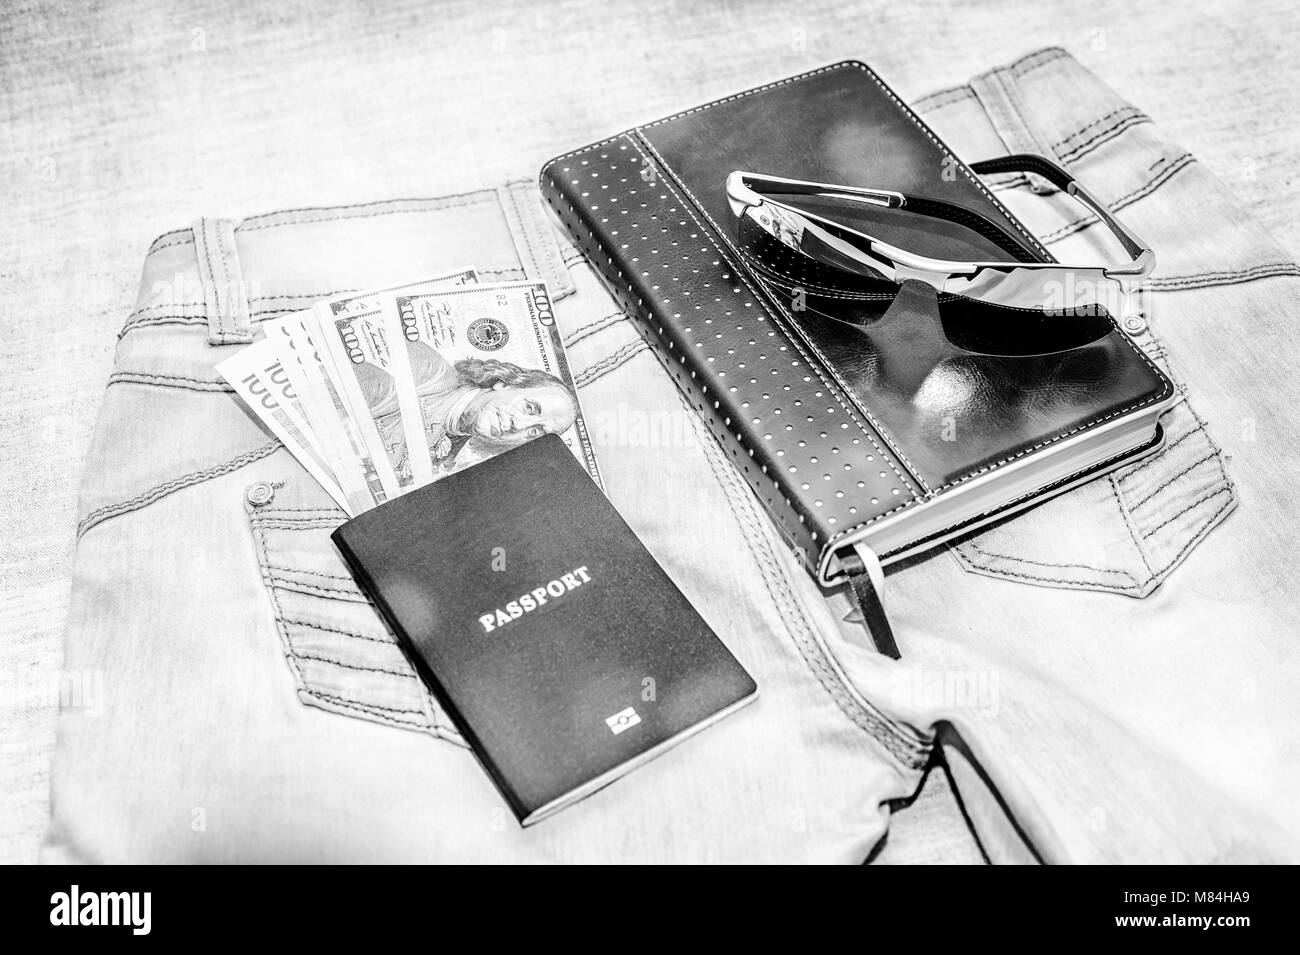 Passeport avec des projets de loi, des verres et le bloc-notes se trouvent sur des jeans. La notion de voyage. Banque D'Images